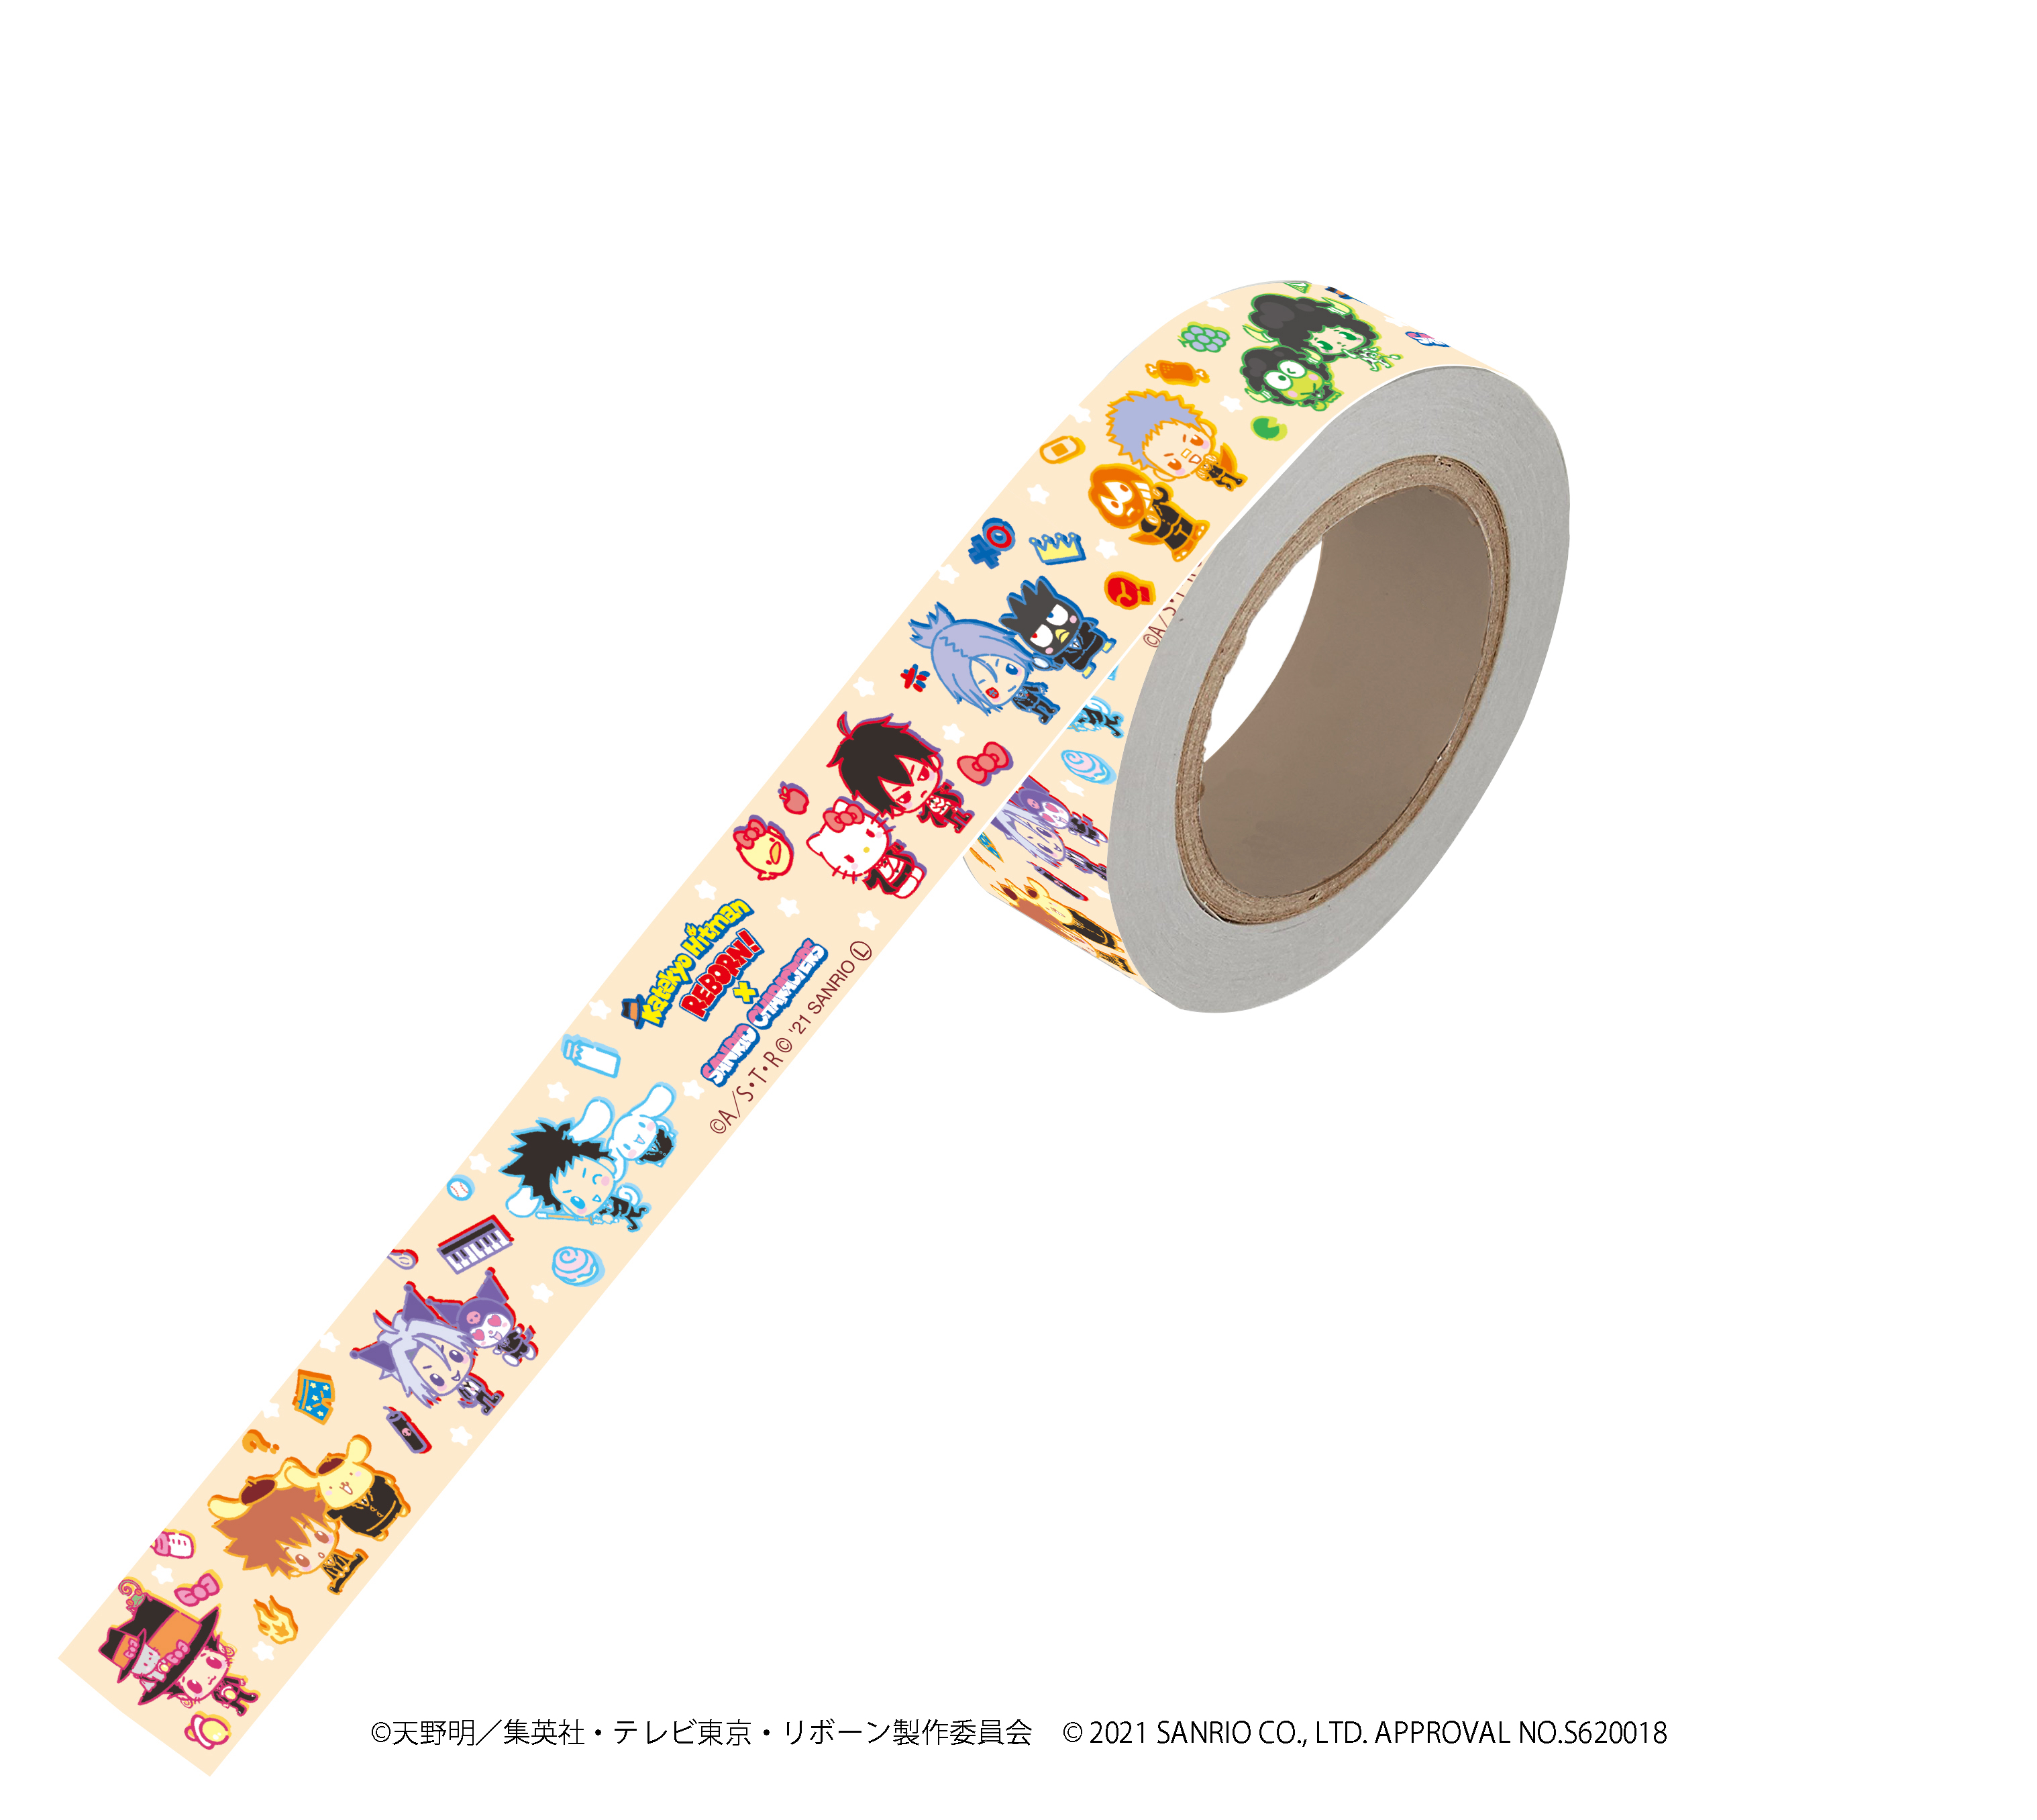 【限定商品】マスキングテープ「家庭教師ヒットマンREBORN!×SANRIO CHARACTERS」01/整列デザイン